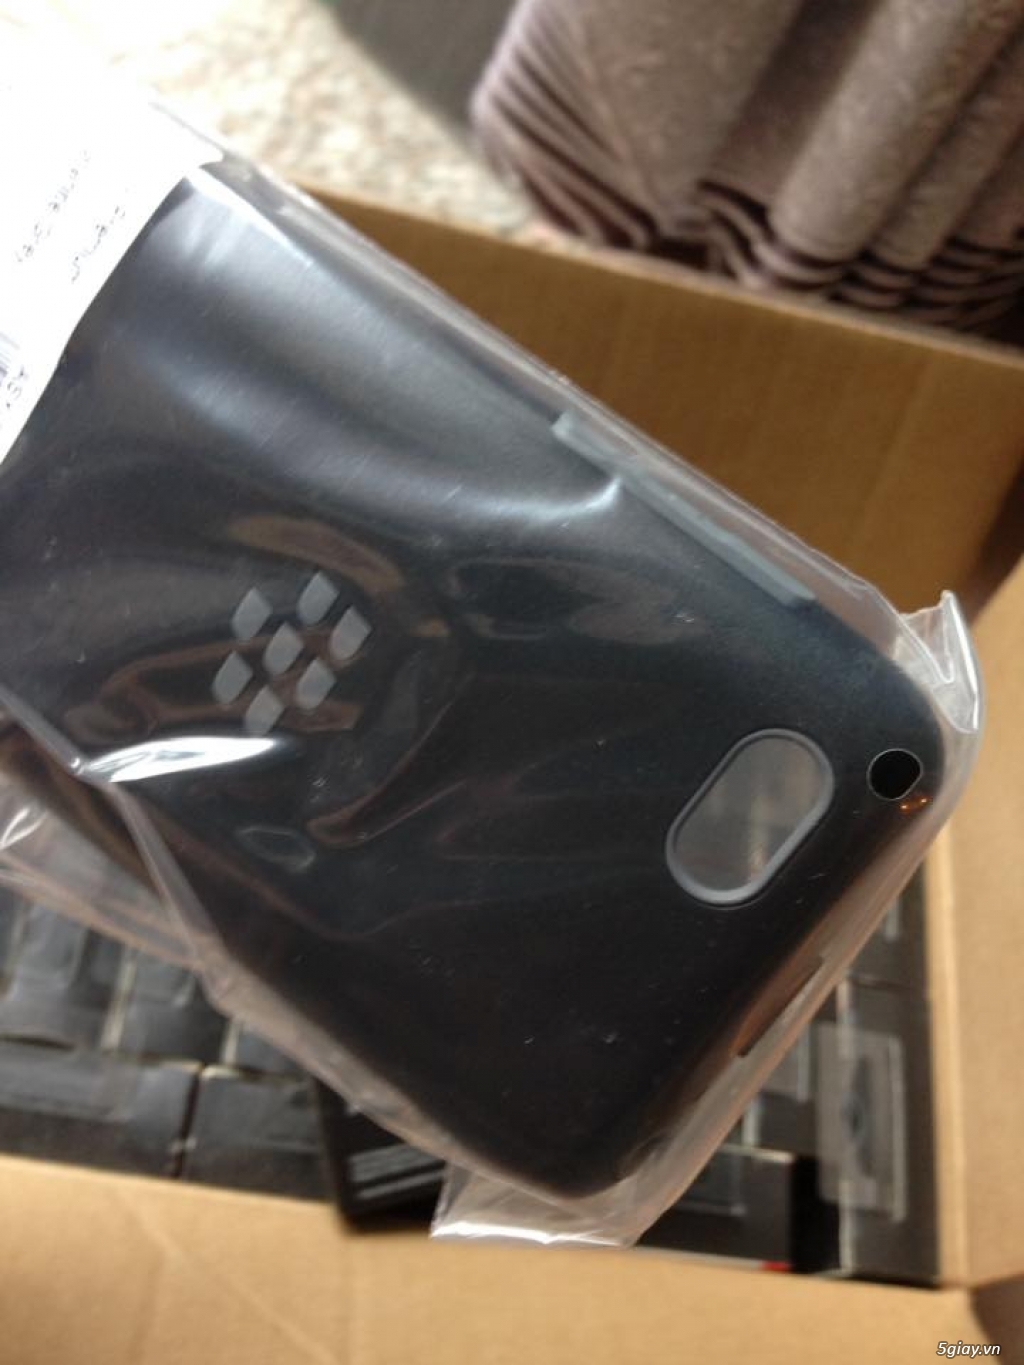 Premium Shell Blackberry Q5 new 100% nguyên hộp nhập khẩu thanh lý - 4